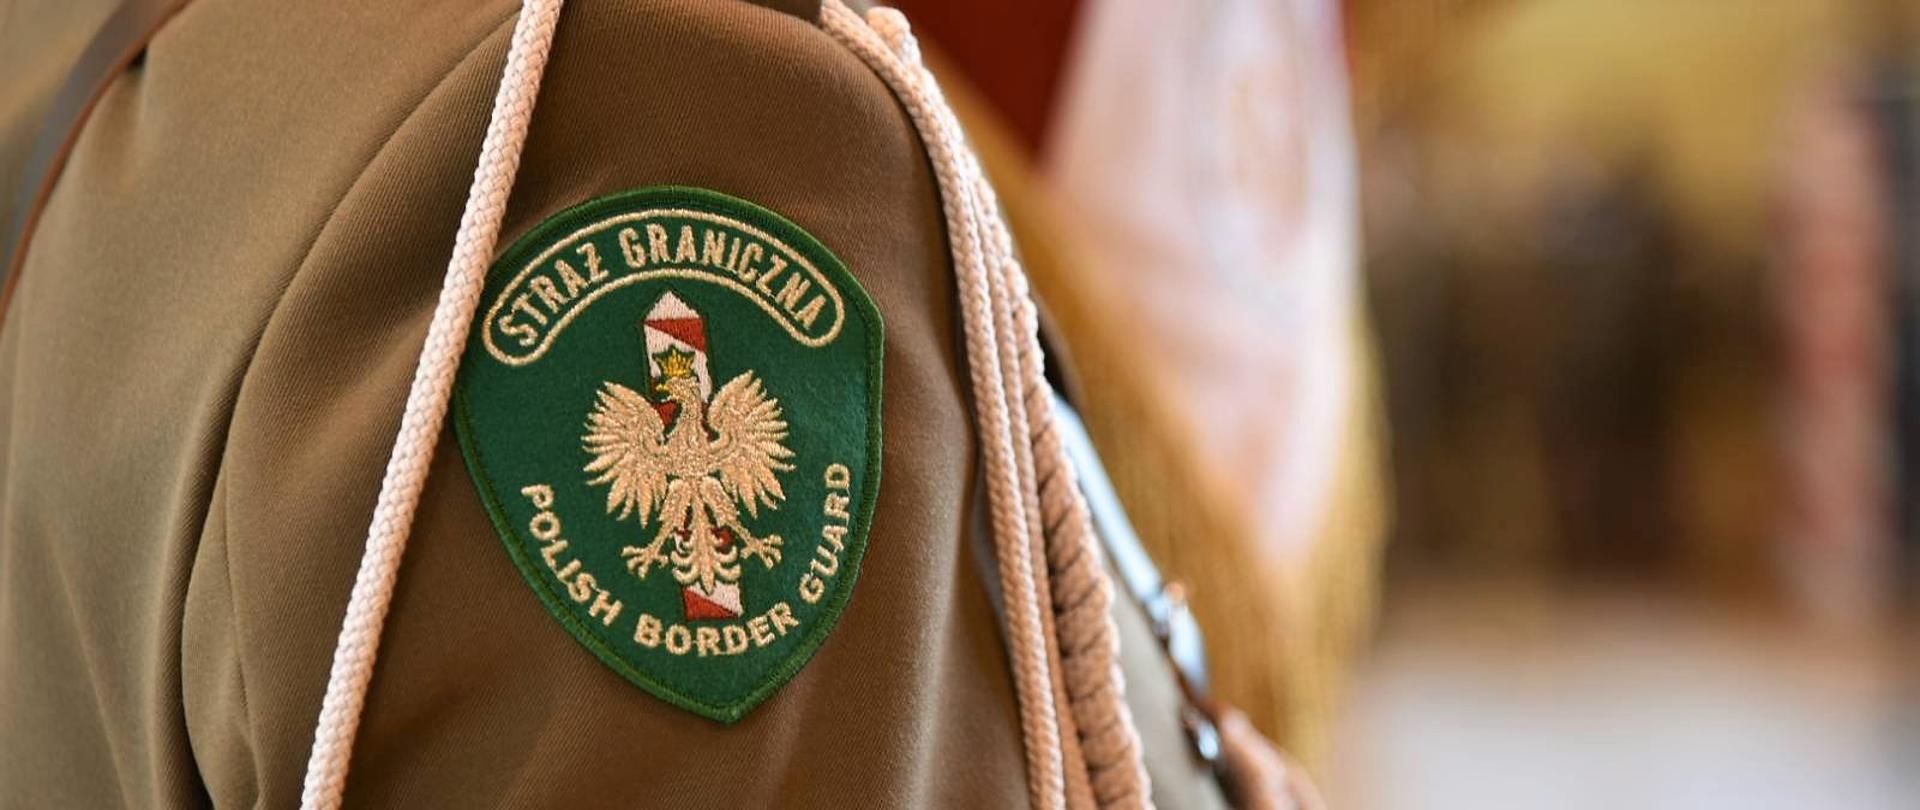 Zielona naszywka na rękawie munduru z napisem "Straż Graniczna Polish Border Guard" okalający orła białego w złotej koronie umieszczonego na tle biało-czerwonego słupka granicznego 